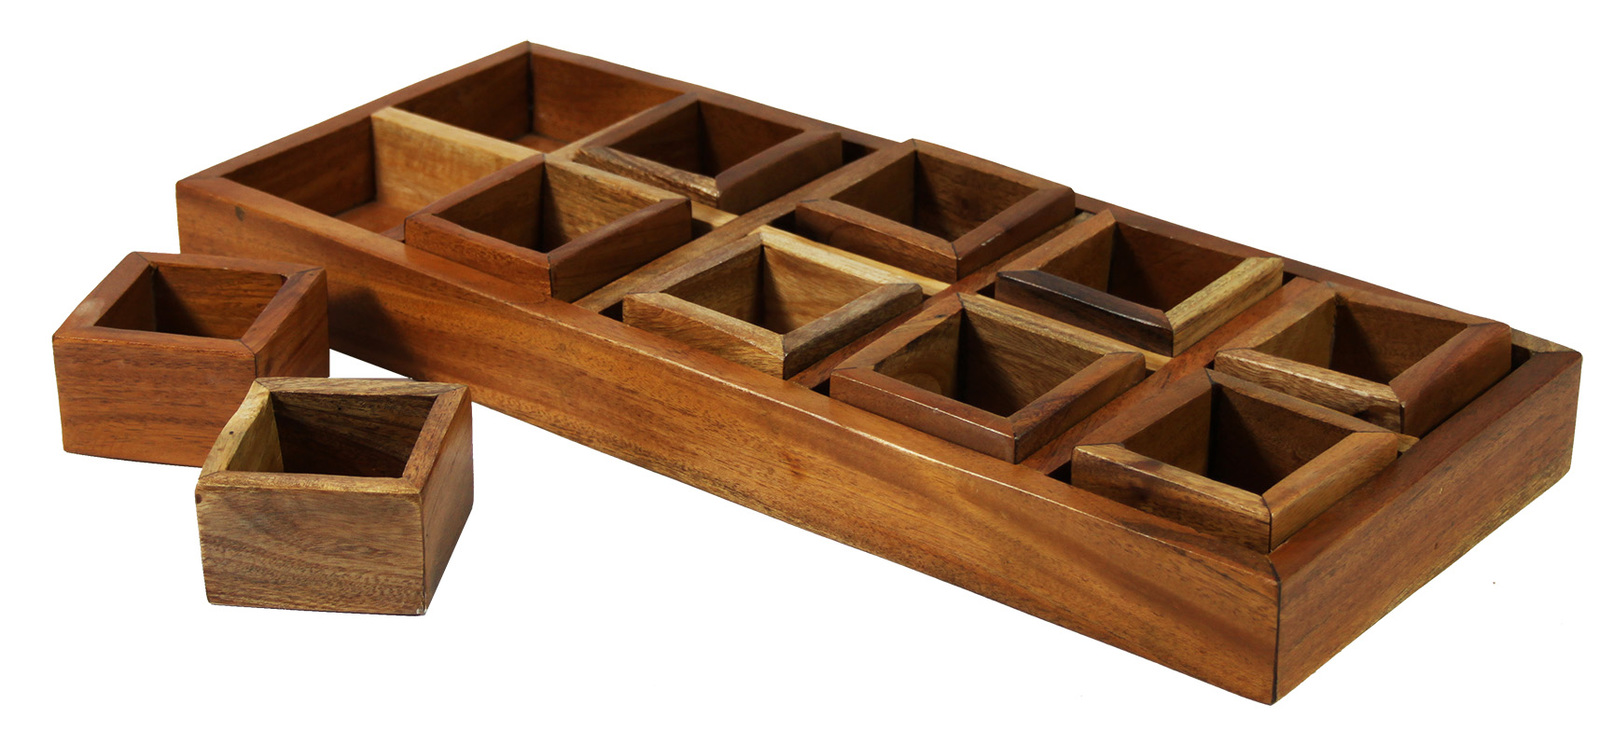 Mahogany Sorting Tray - 10 Compartments & Boxes